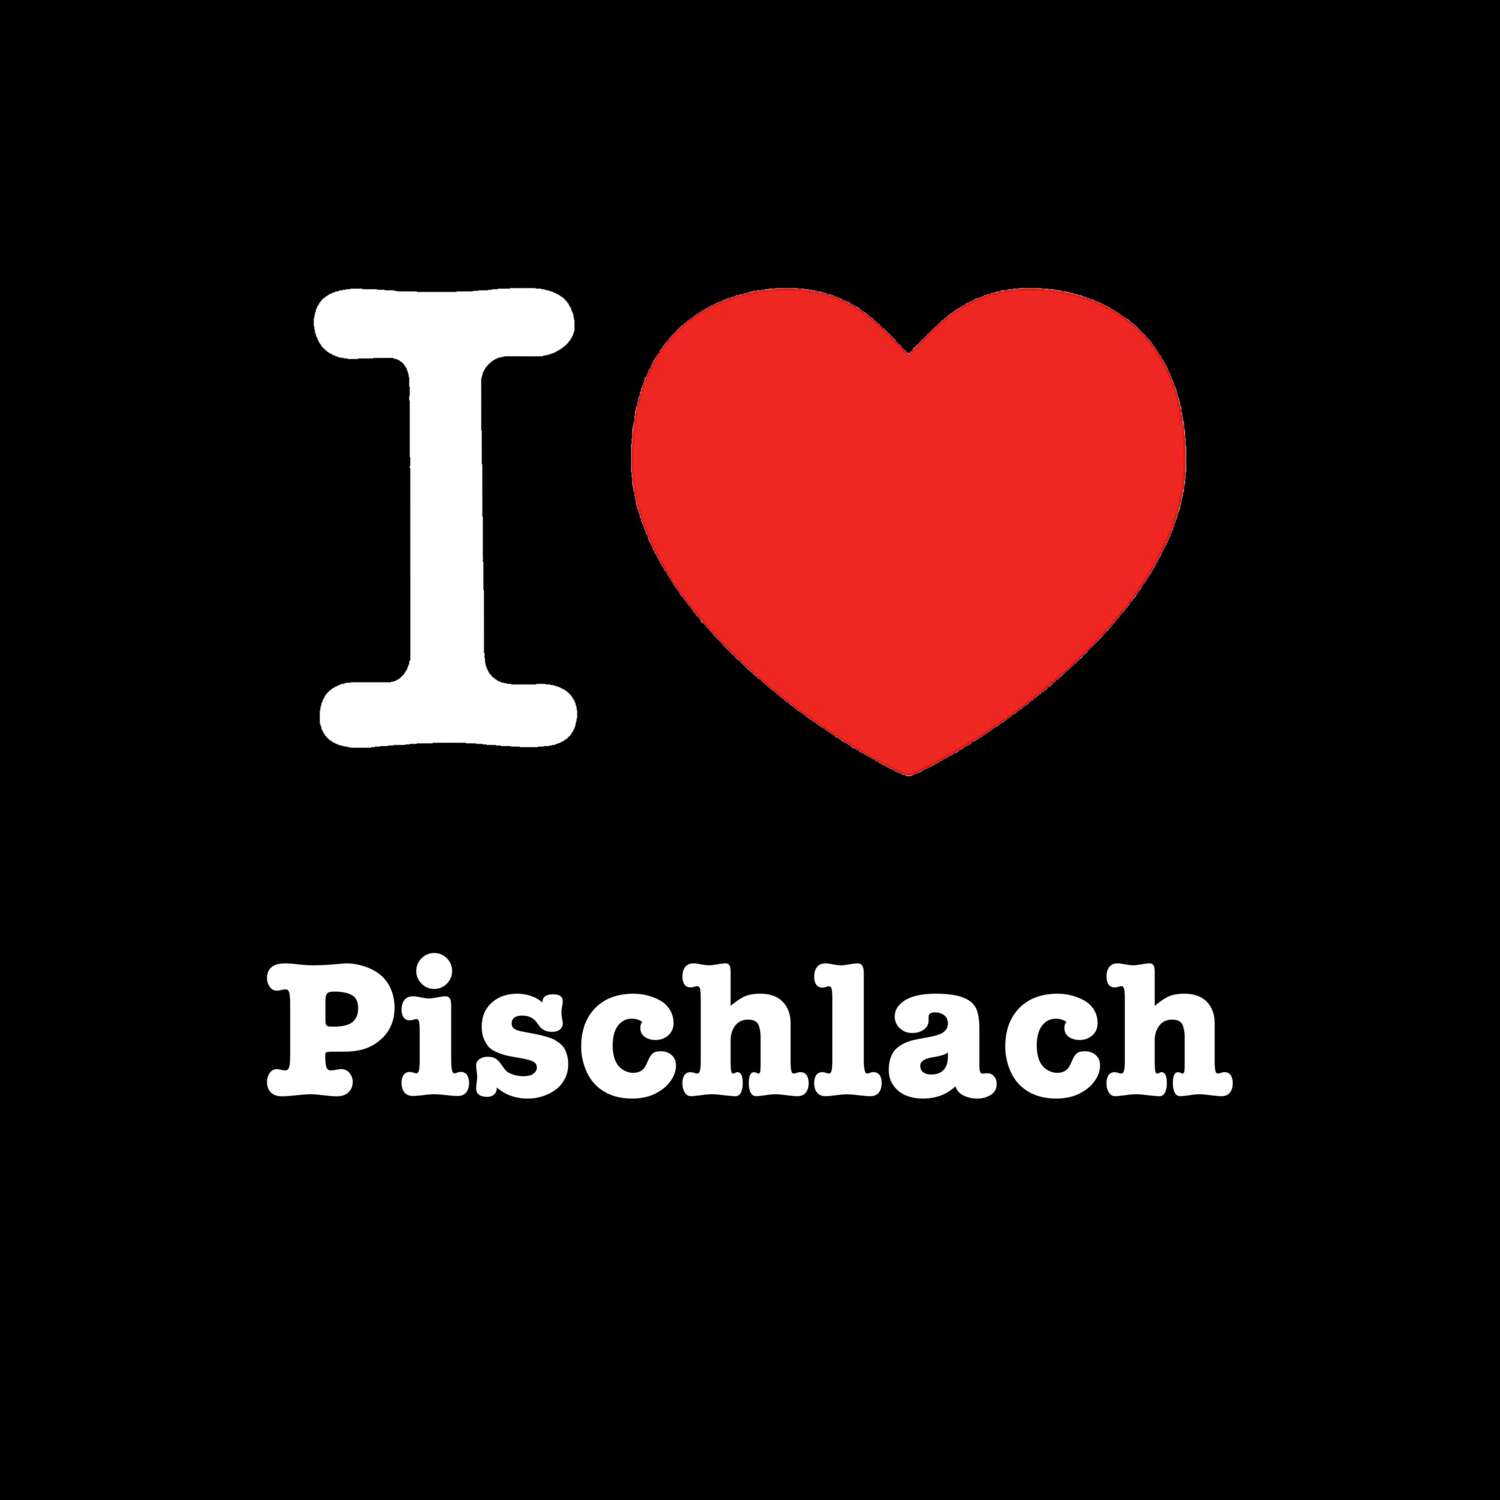 Pischlach T-Shirt »I love«